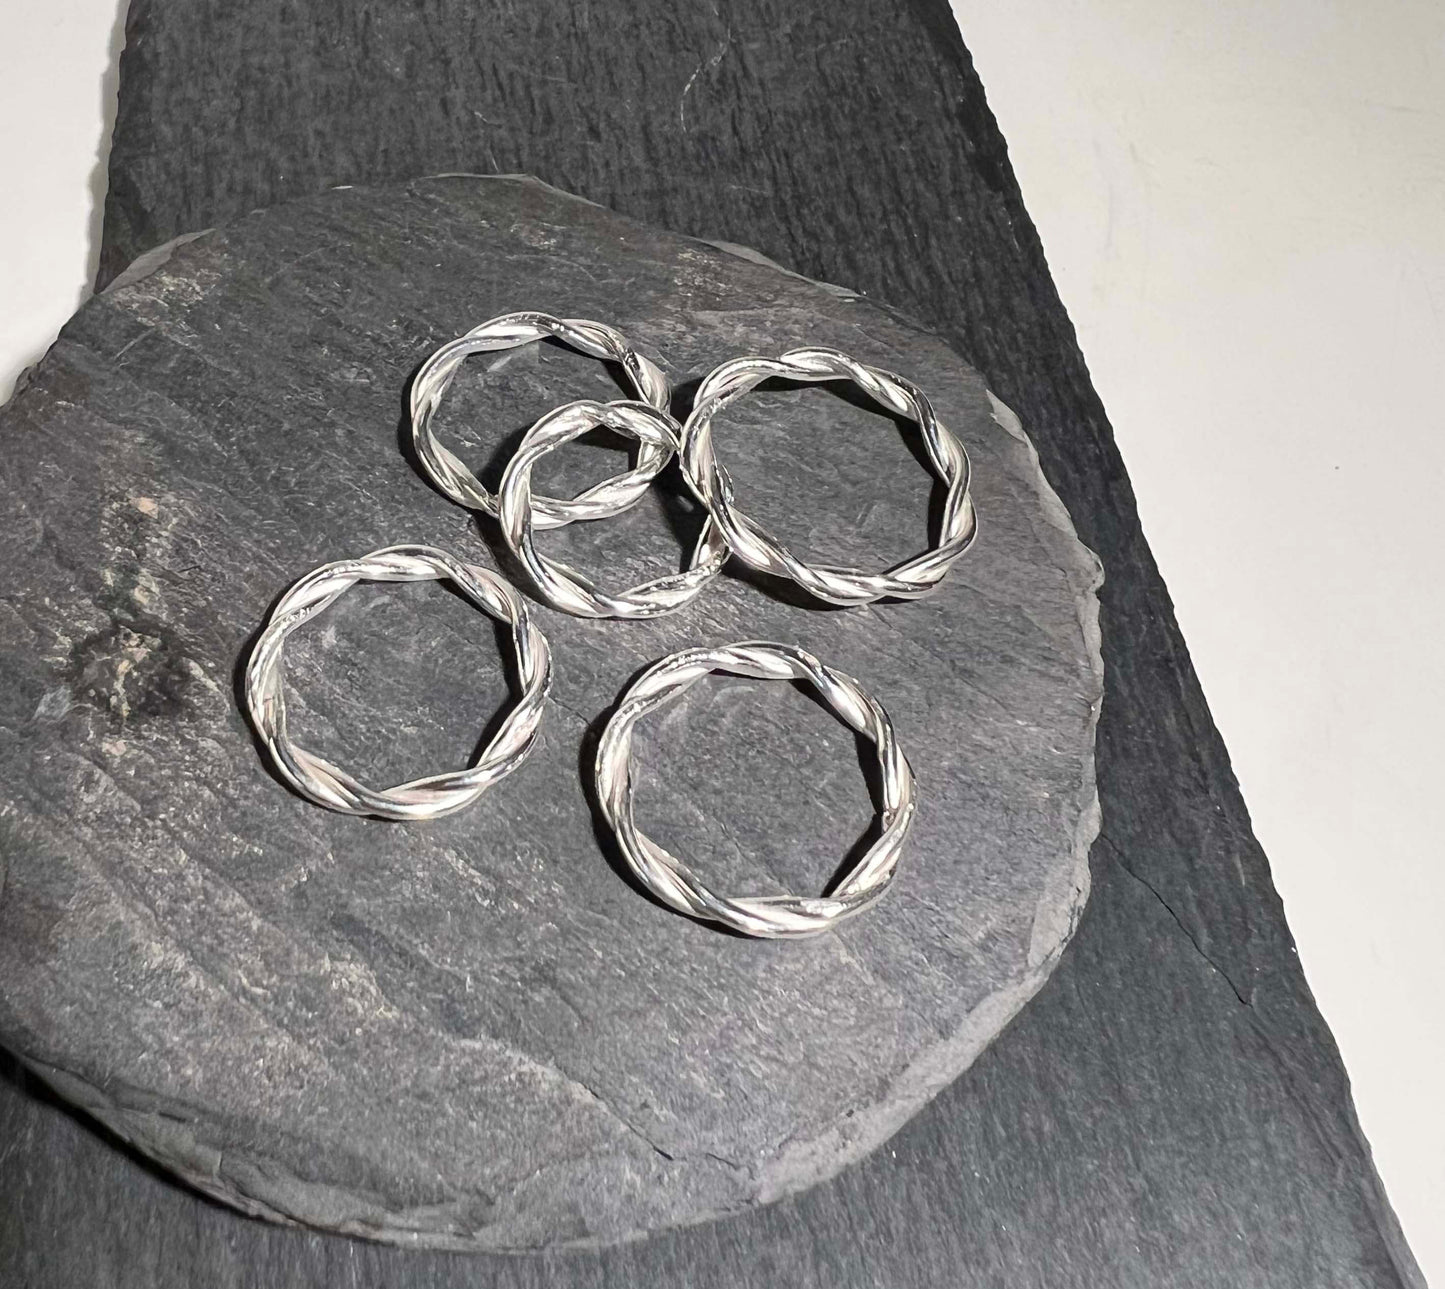 Handgjord silverring av tvinnande silvertrådar